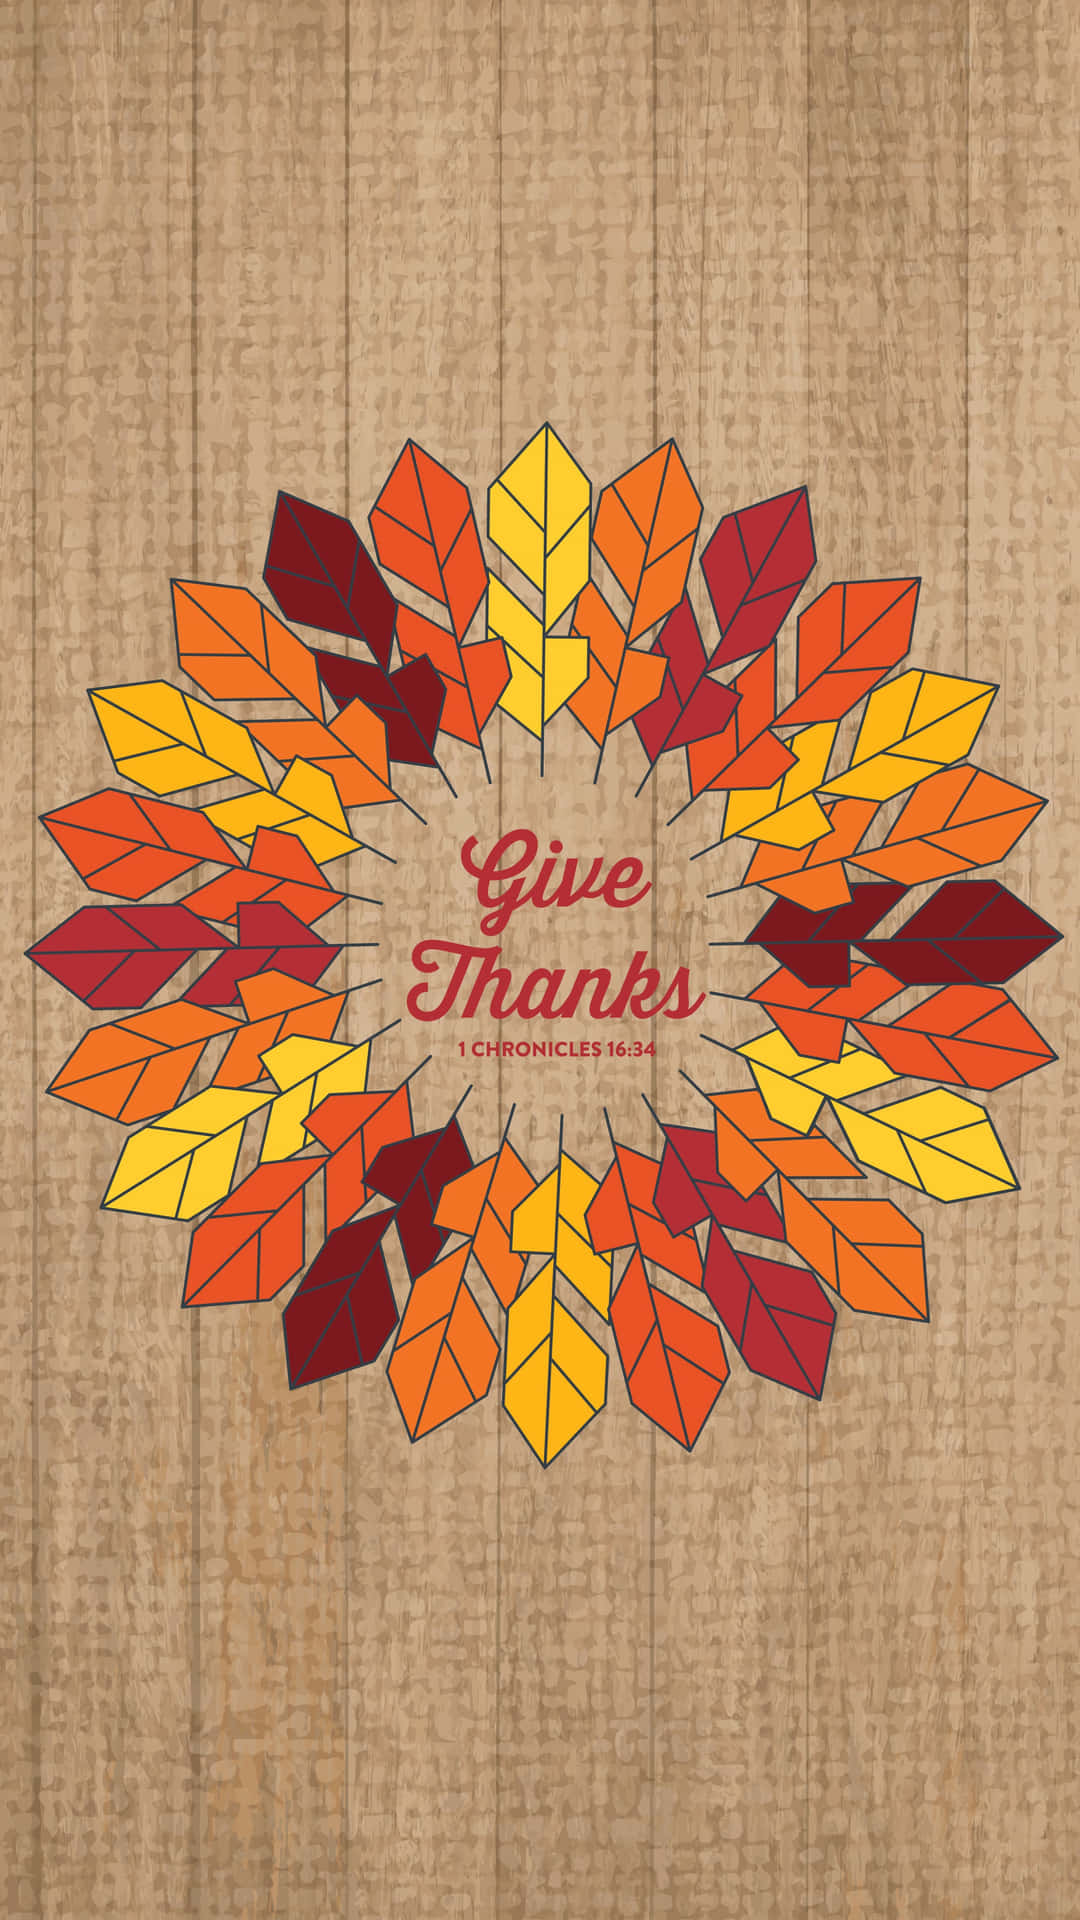 Denne Thanksgiving, foretag et opkald til venner og familie for at udtrykke taknemmelighed. Wallpaper